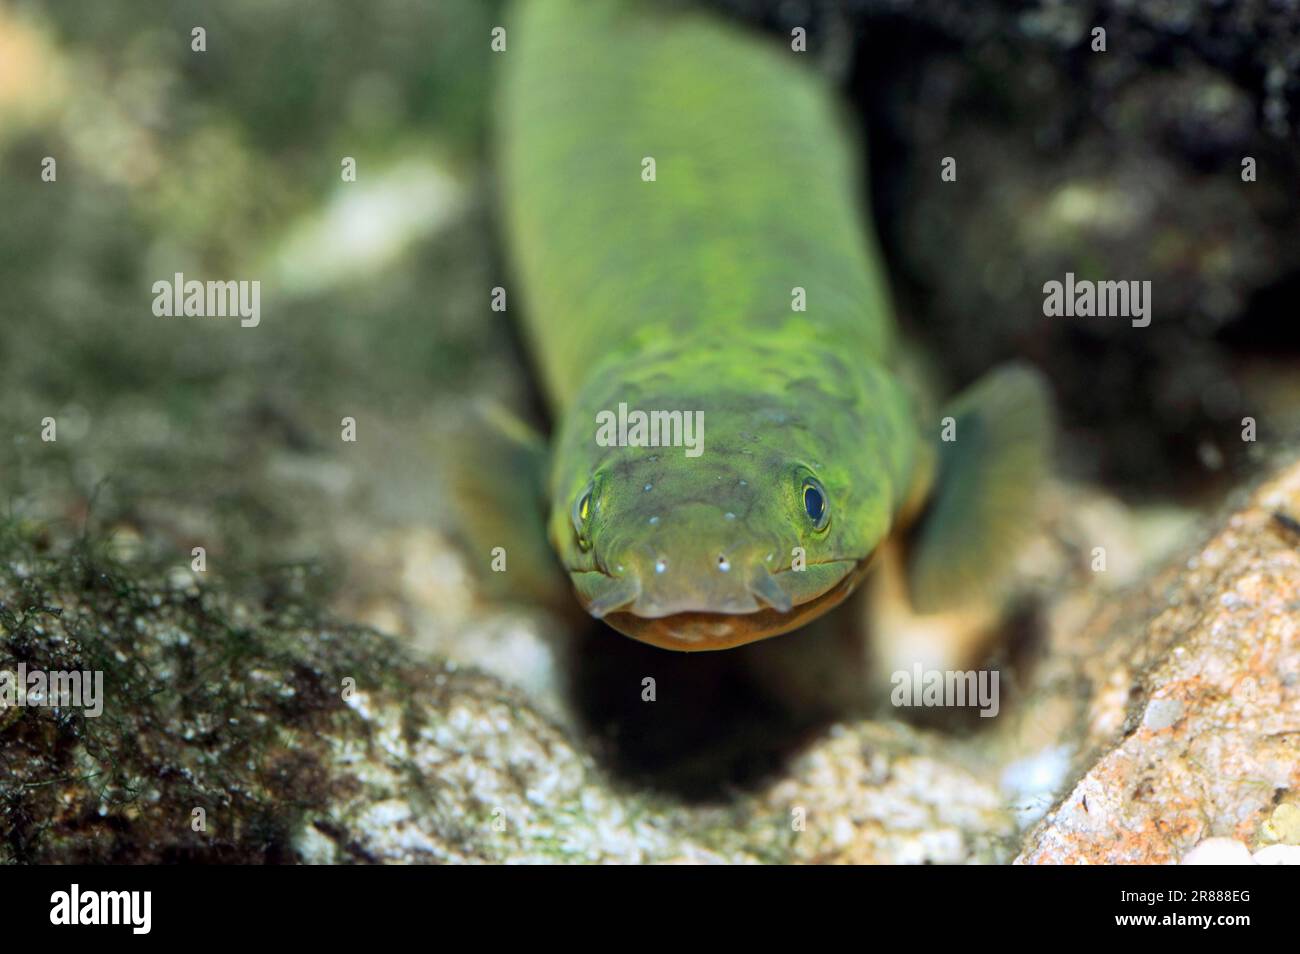 Reedfish (Erpetoichthys reedfish (Calamoichthys calabaricus), Snakefish, Ropefish Stock Photo